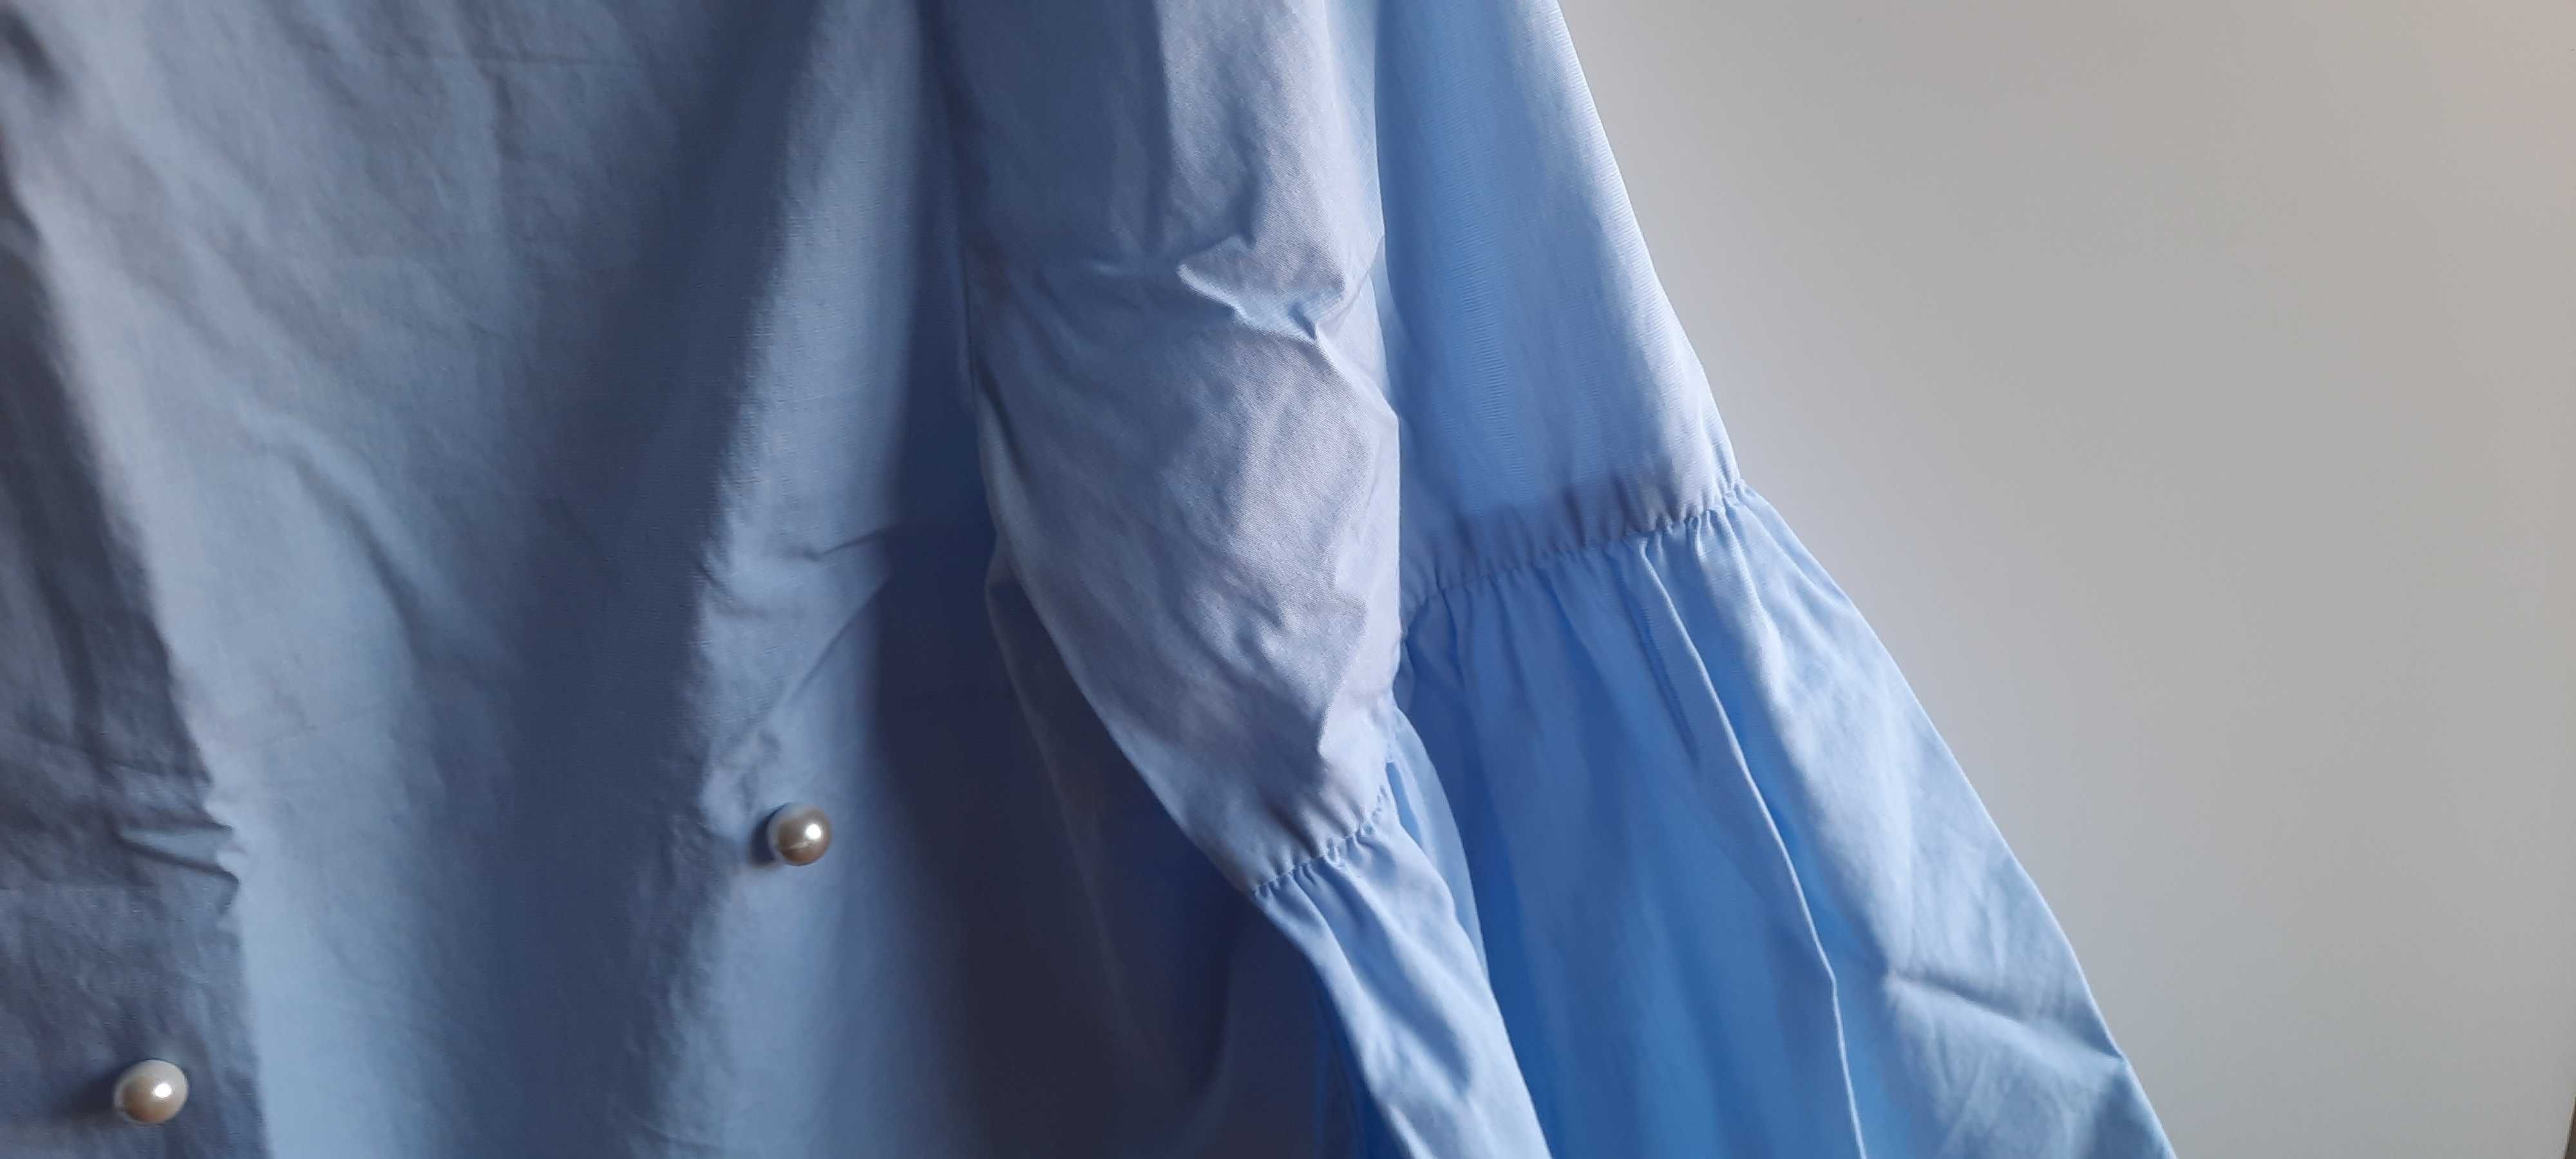 Blusa azul com pérolas Tam.M da Zara